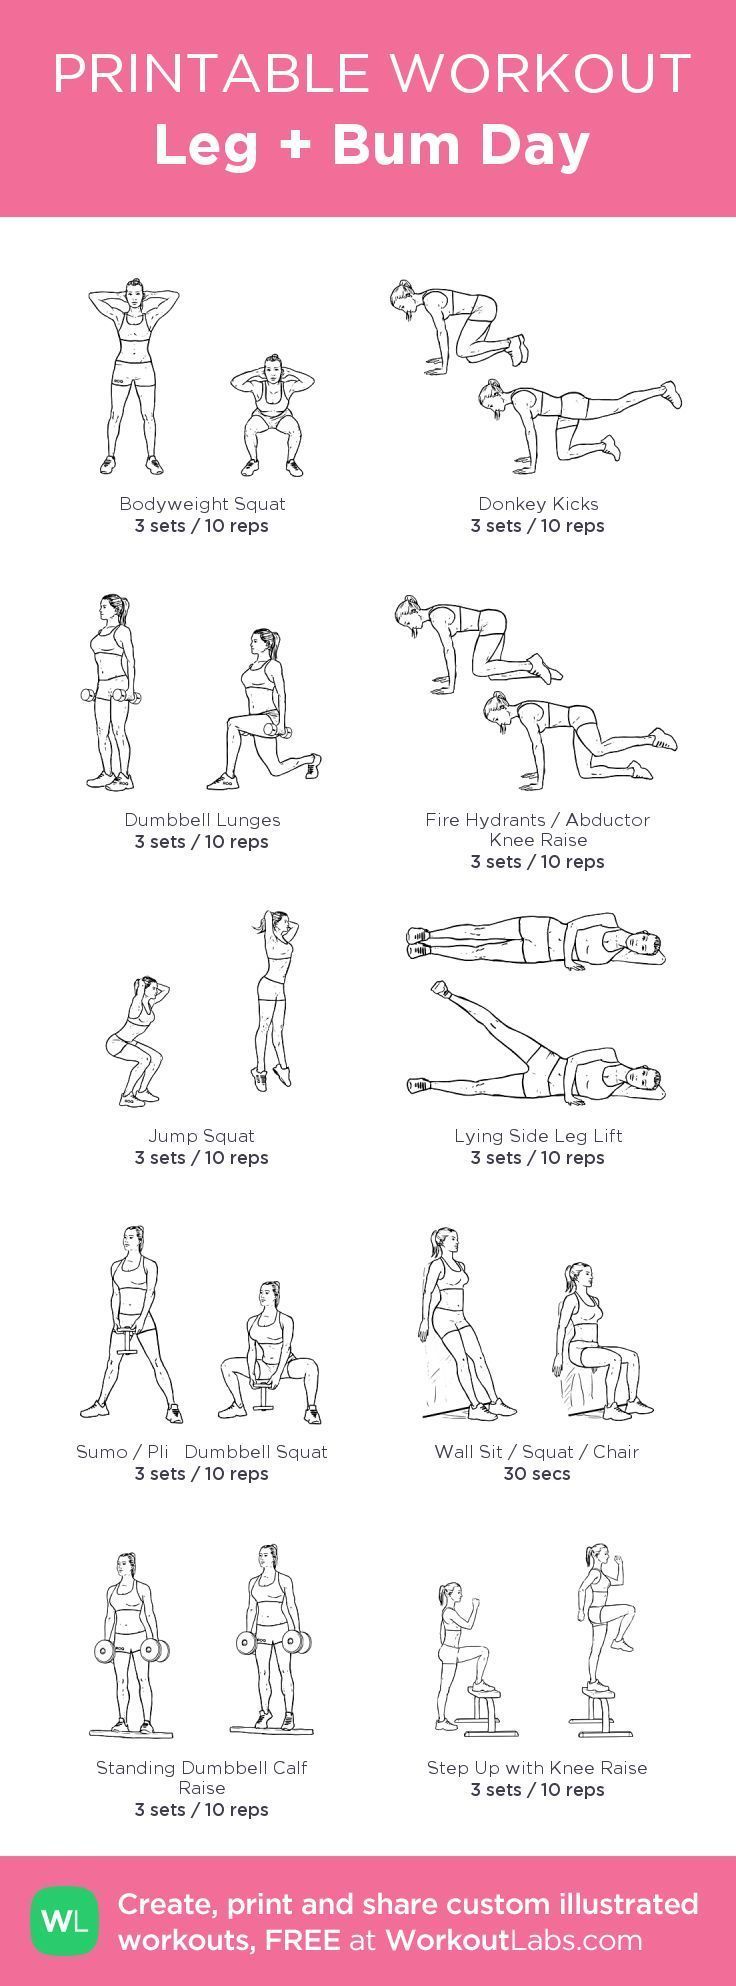 weight loss camp, weight loss clinic, vegetarian weight loss diet – Leg + Bum Day Workout #fitspiration